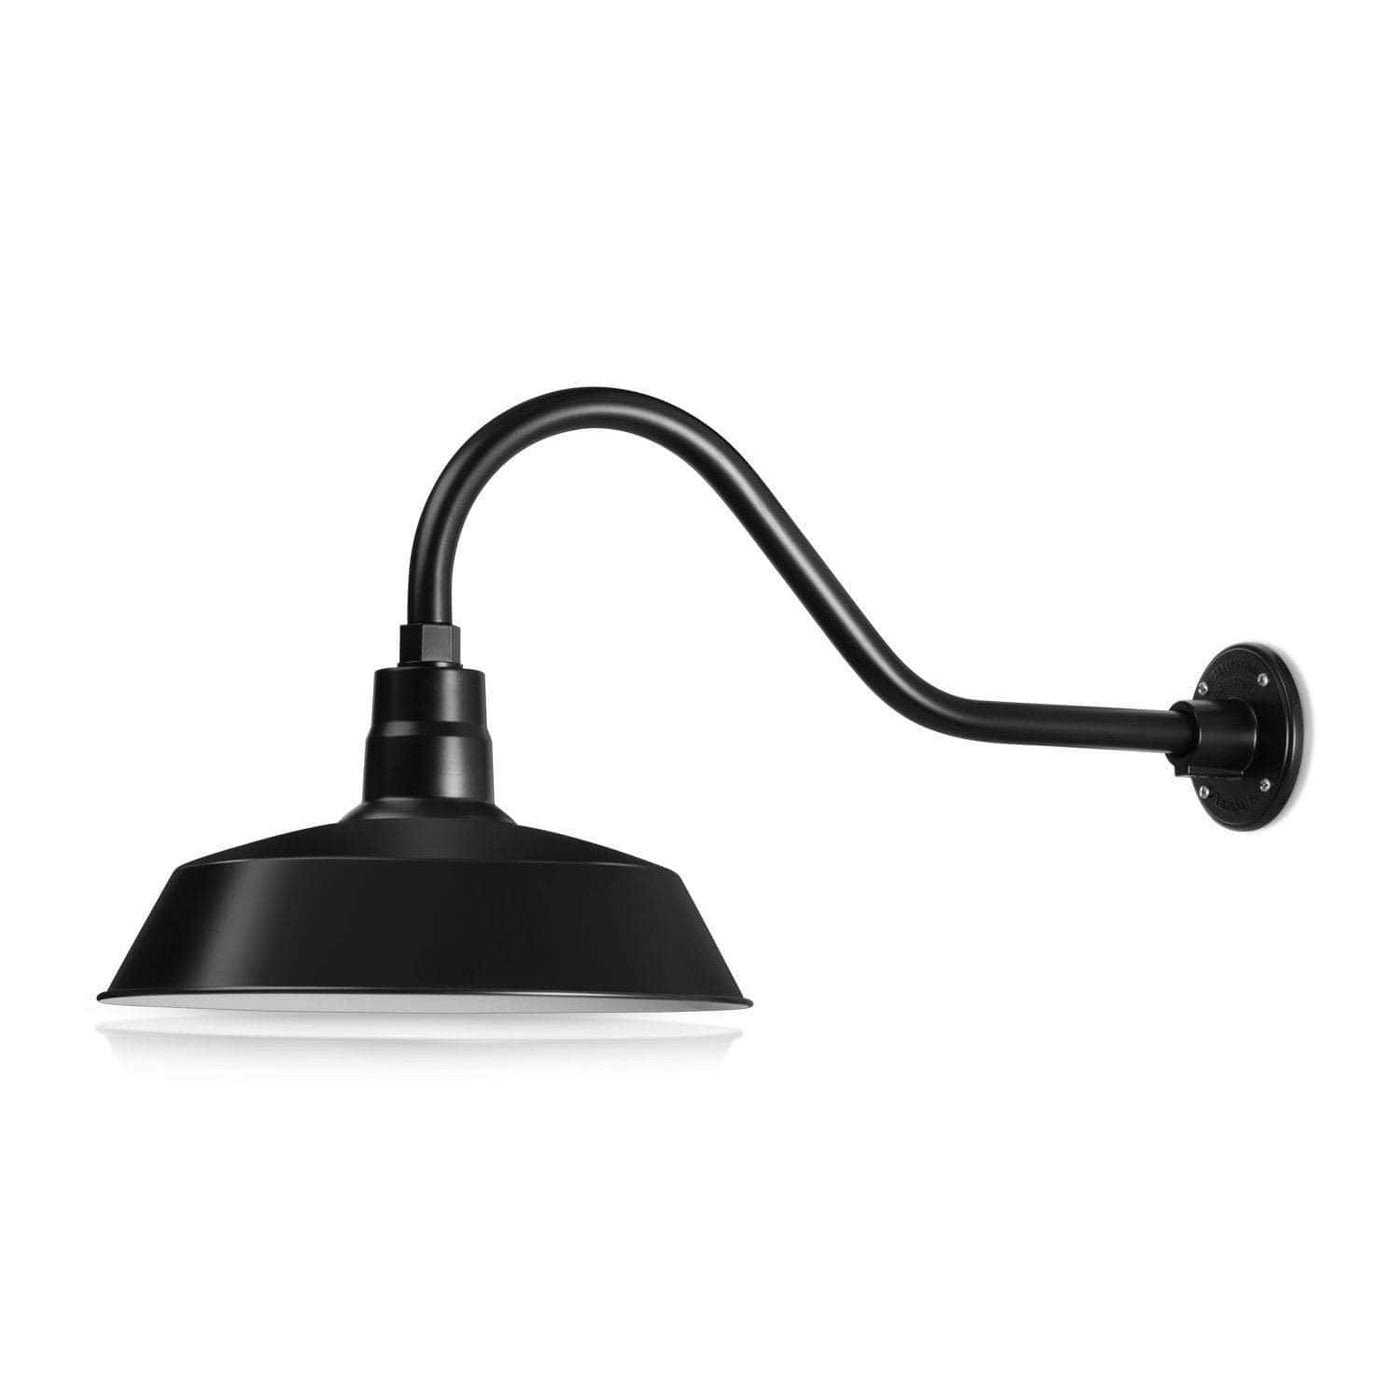 Mini Lampe LED 9W - Black